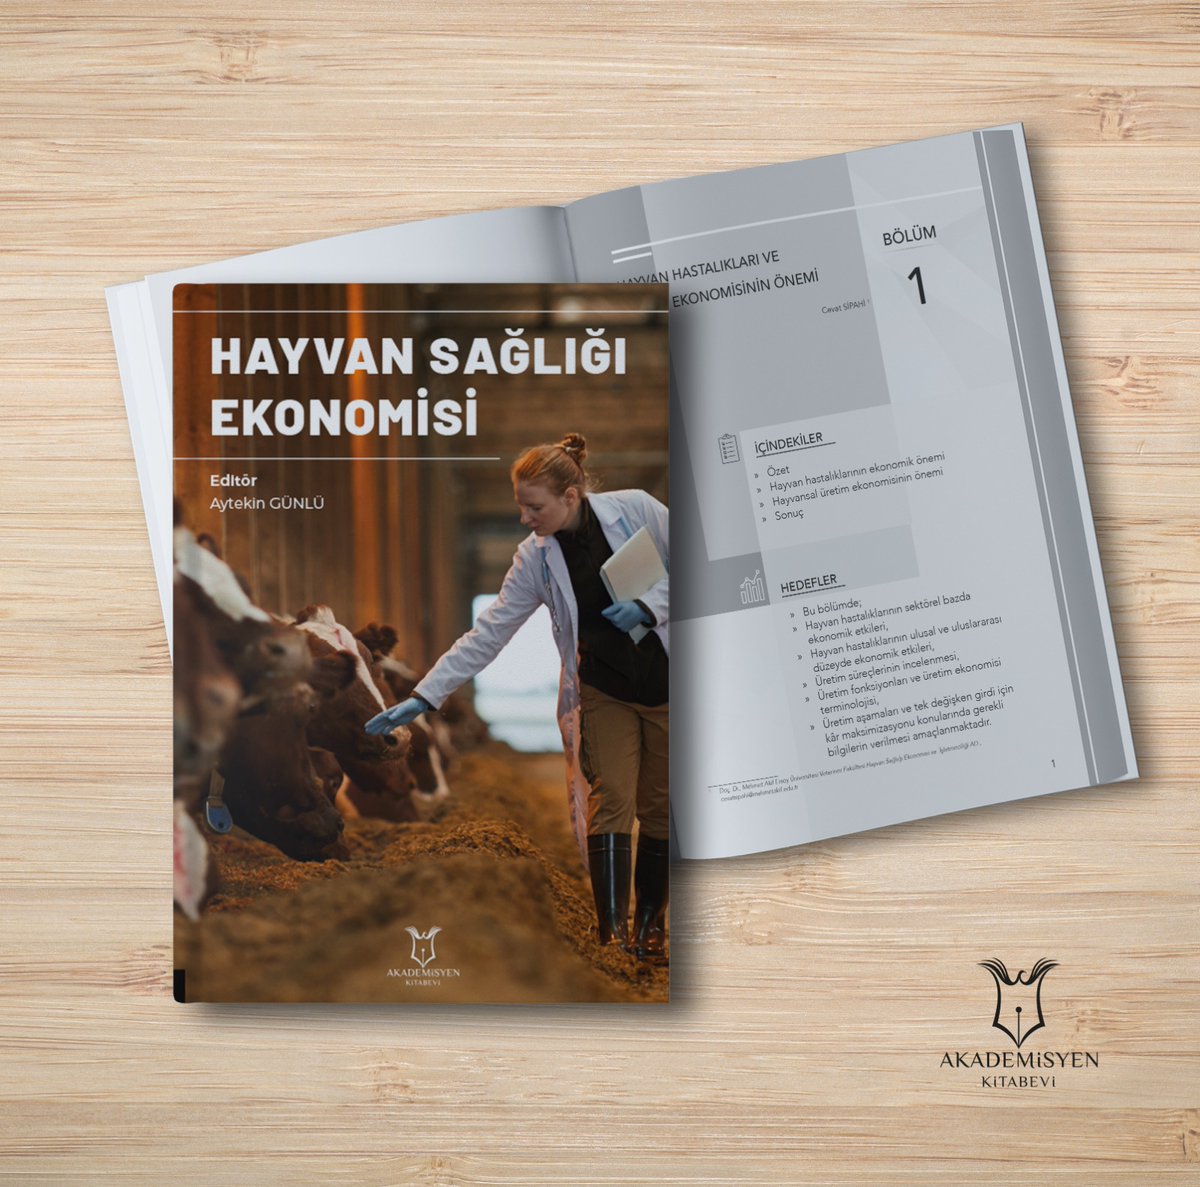 Alanımızda kaynak eksikliğini gidermeye yarayacak 'Hayvan Sağlığı Ekonomisi' kitabımız basılarak yayınlanmıştır.  Camiamıza, meslektaşlarımıza ve öğrencilerimize faydalı olması temennesiyle.
akademisyen.com/tr/urun/hayvan…